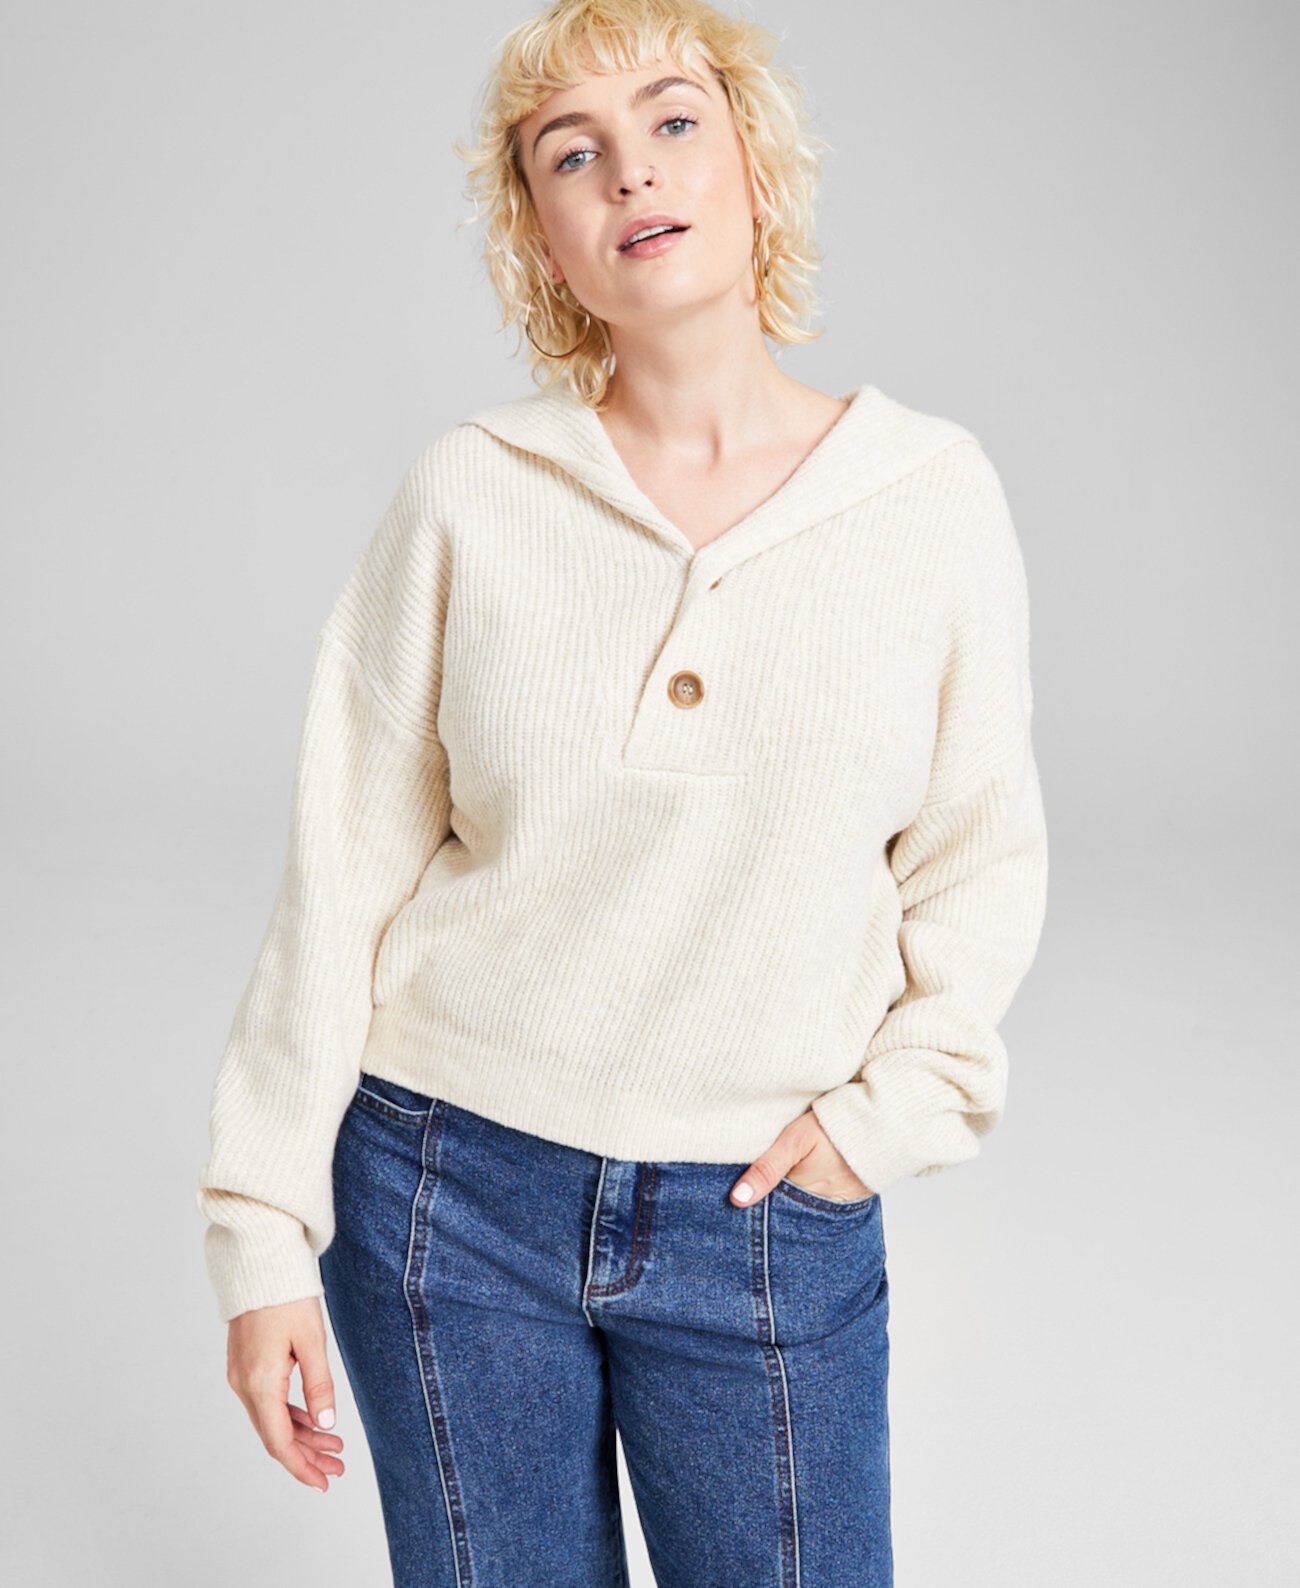 Женский свитер с капюшоном на пуговицах, созданный для Macy's And Now This